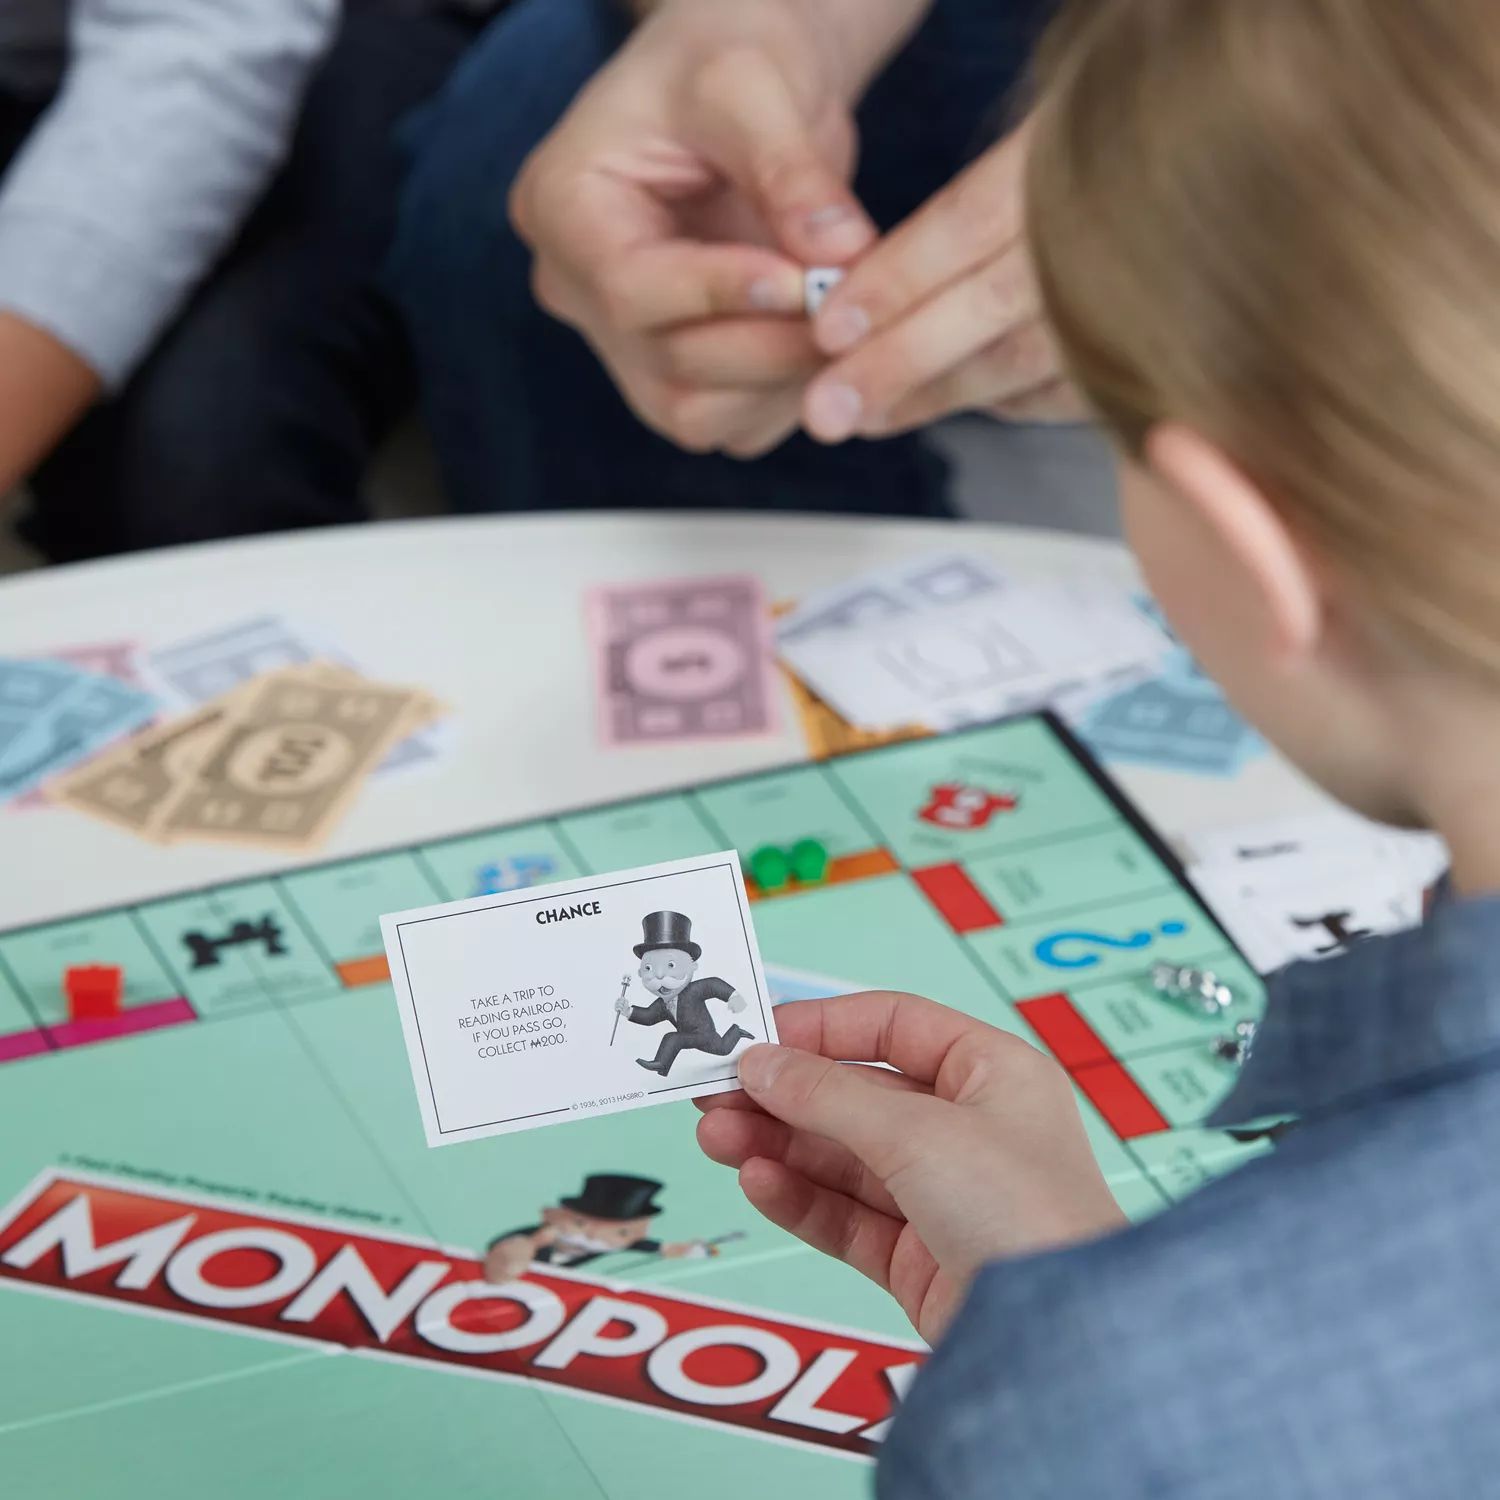 Монополия стратегия. Настольная игра Monopoly классическая обновленная c1009. Игра настольная Монополия классика Monopoly c1009. Монополия игра Эстетика. Монополия в детстве.